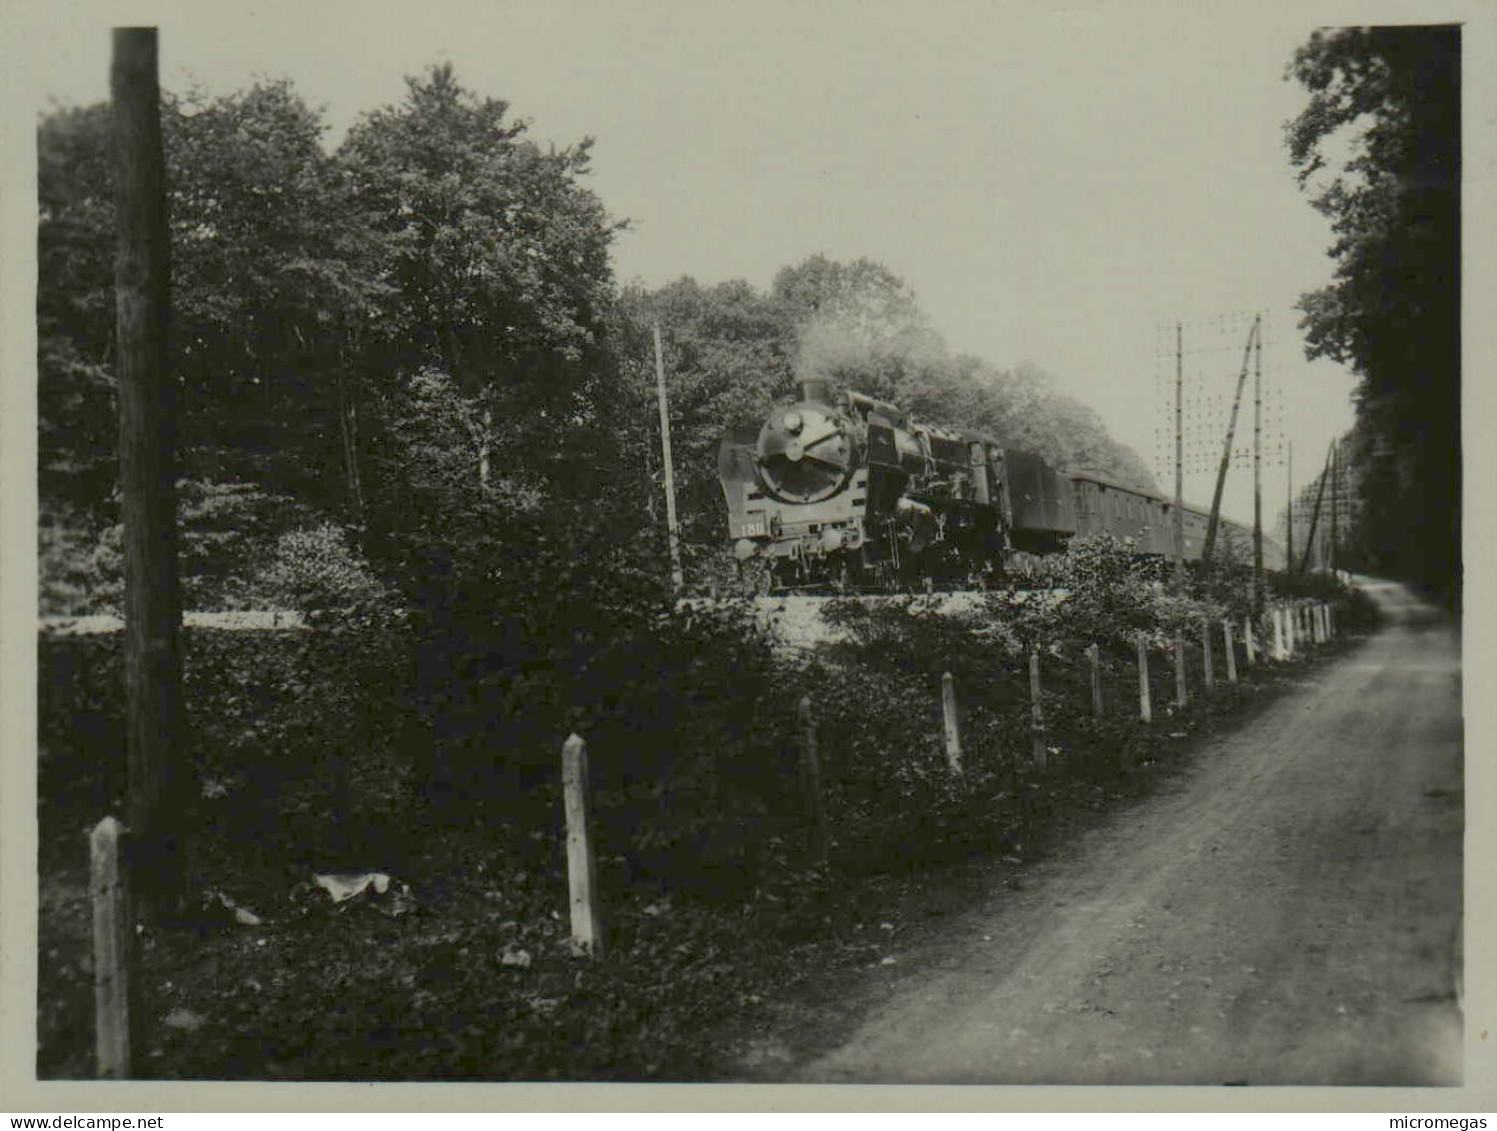 1934 - Rapide 180 Nord-Express - Machine 3-1289, Vers Km.36 - Photo 12 X 9 Cm. - Eisenbahnen